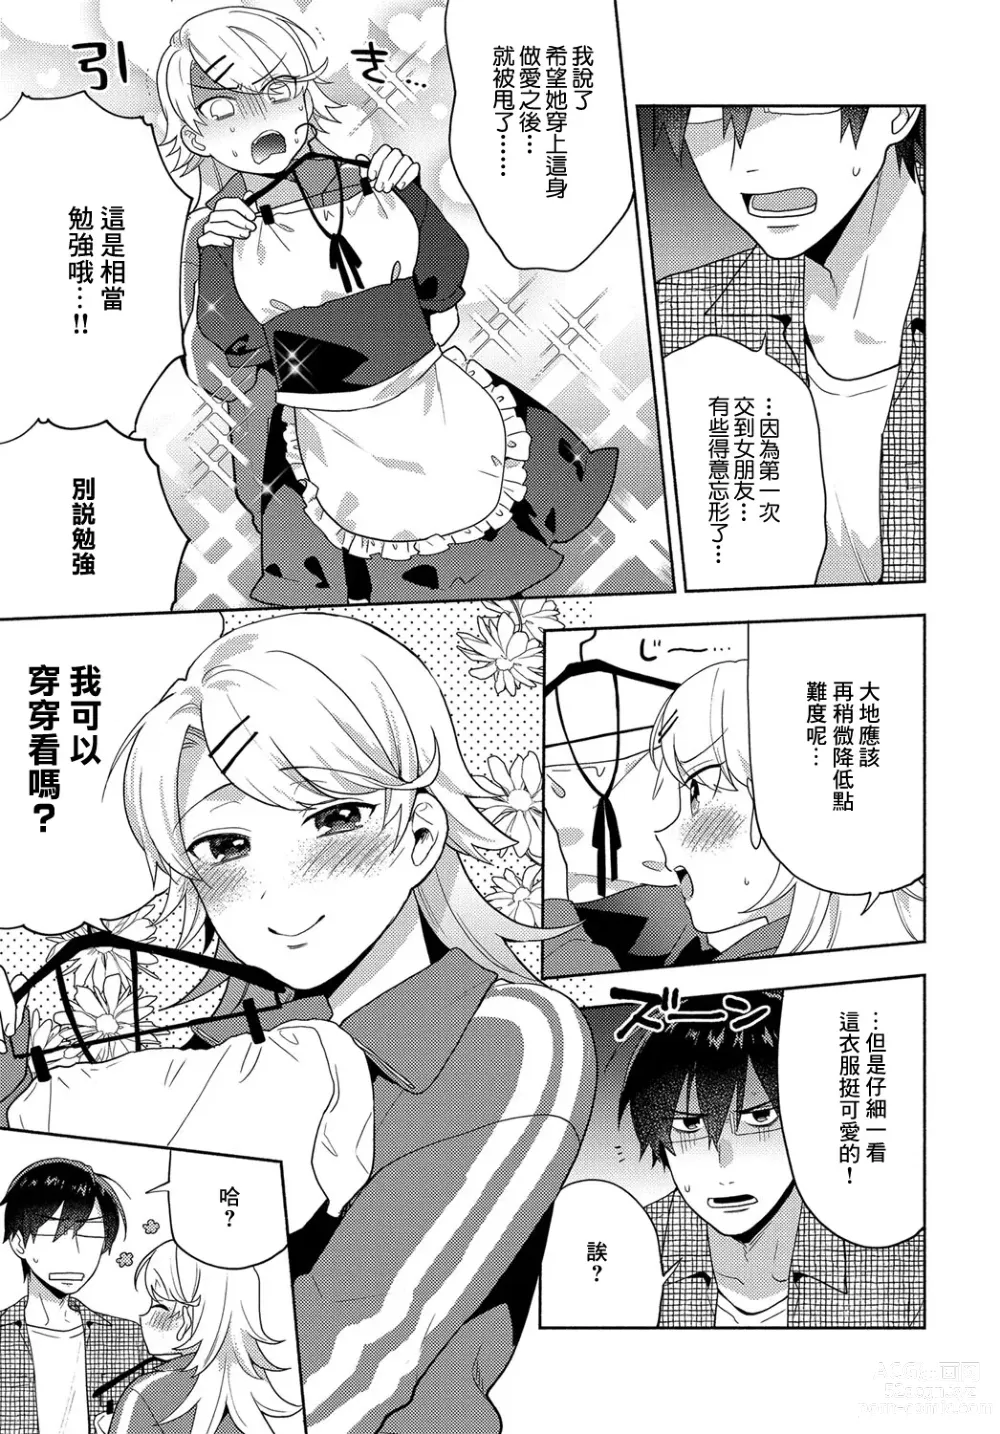 Page 3 of manga Koigokoro Frill